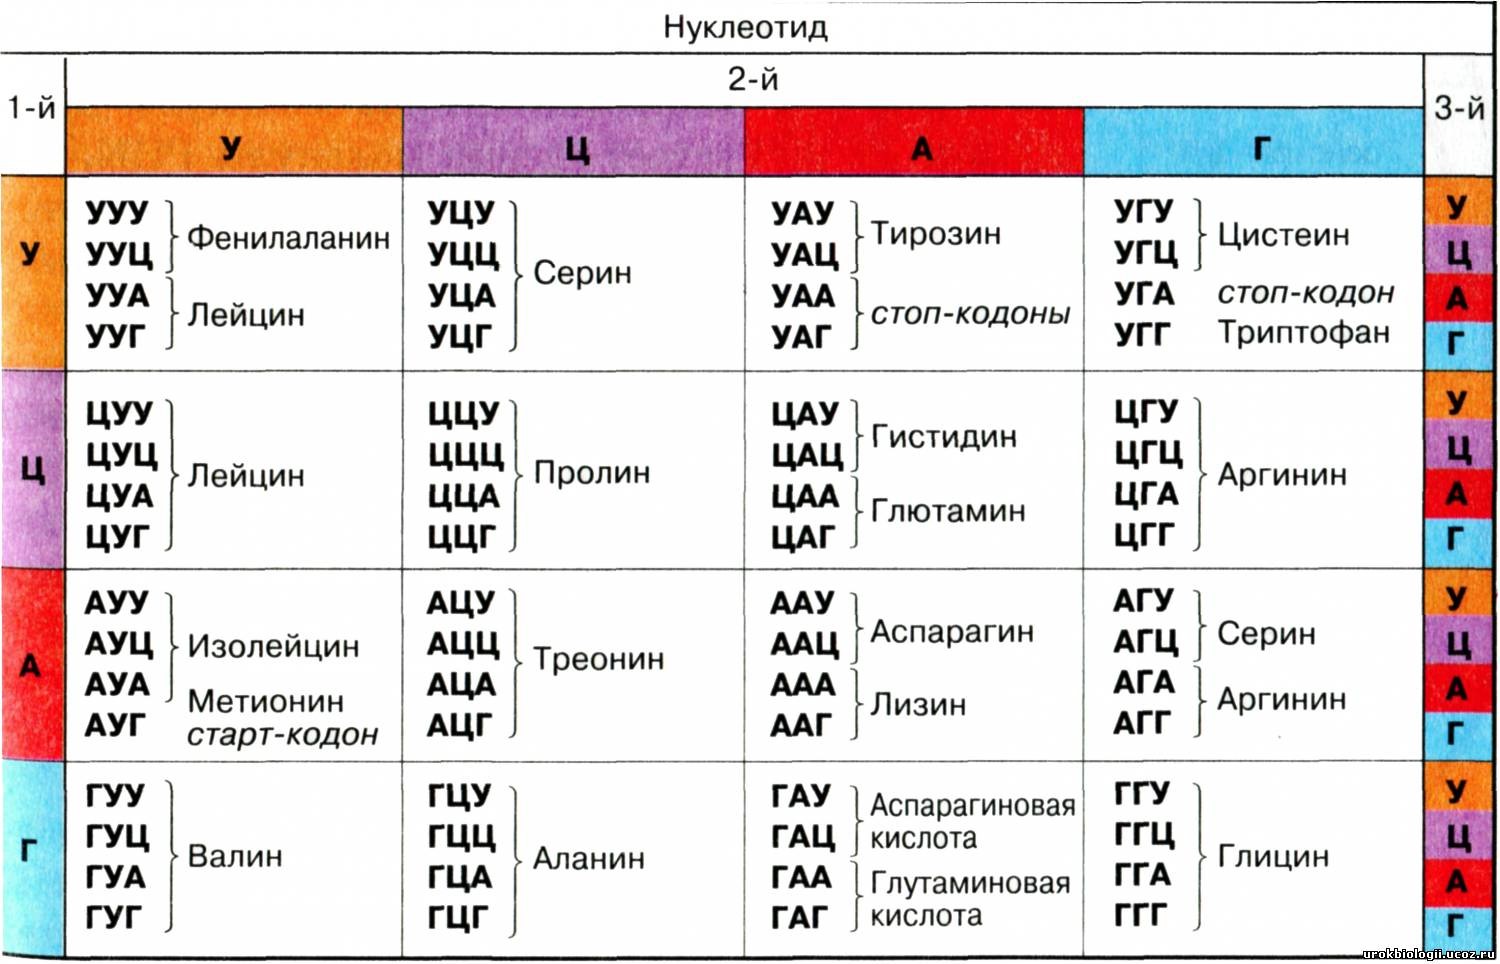 Таблица генетического кода и части белков,
                  которые он кодирует.
                  Источник: https://stepik.org/lesson/199638/step/1